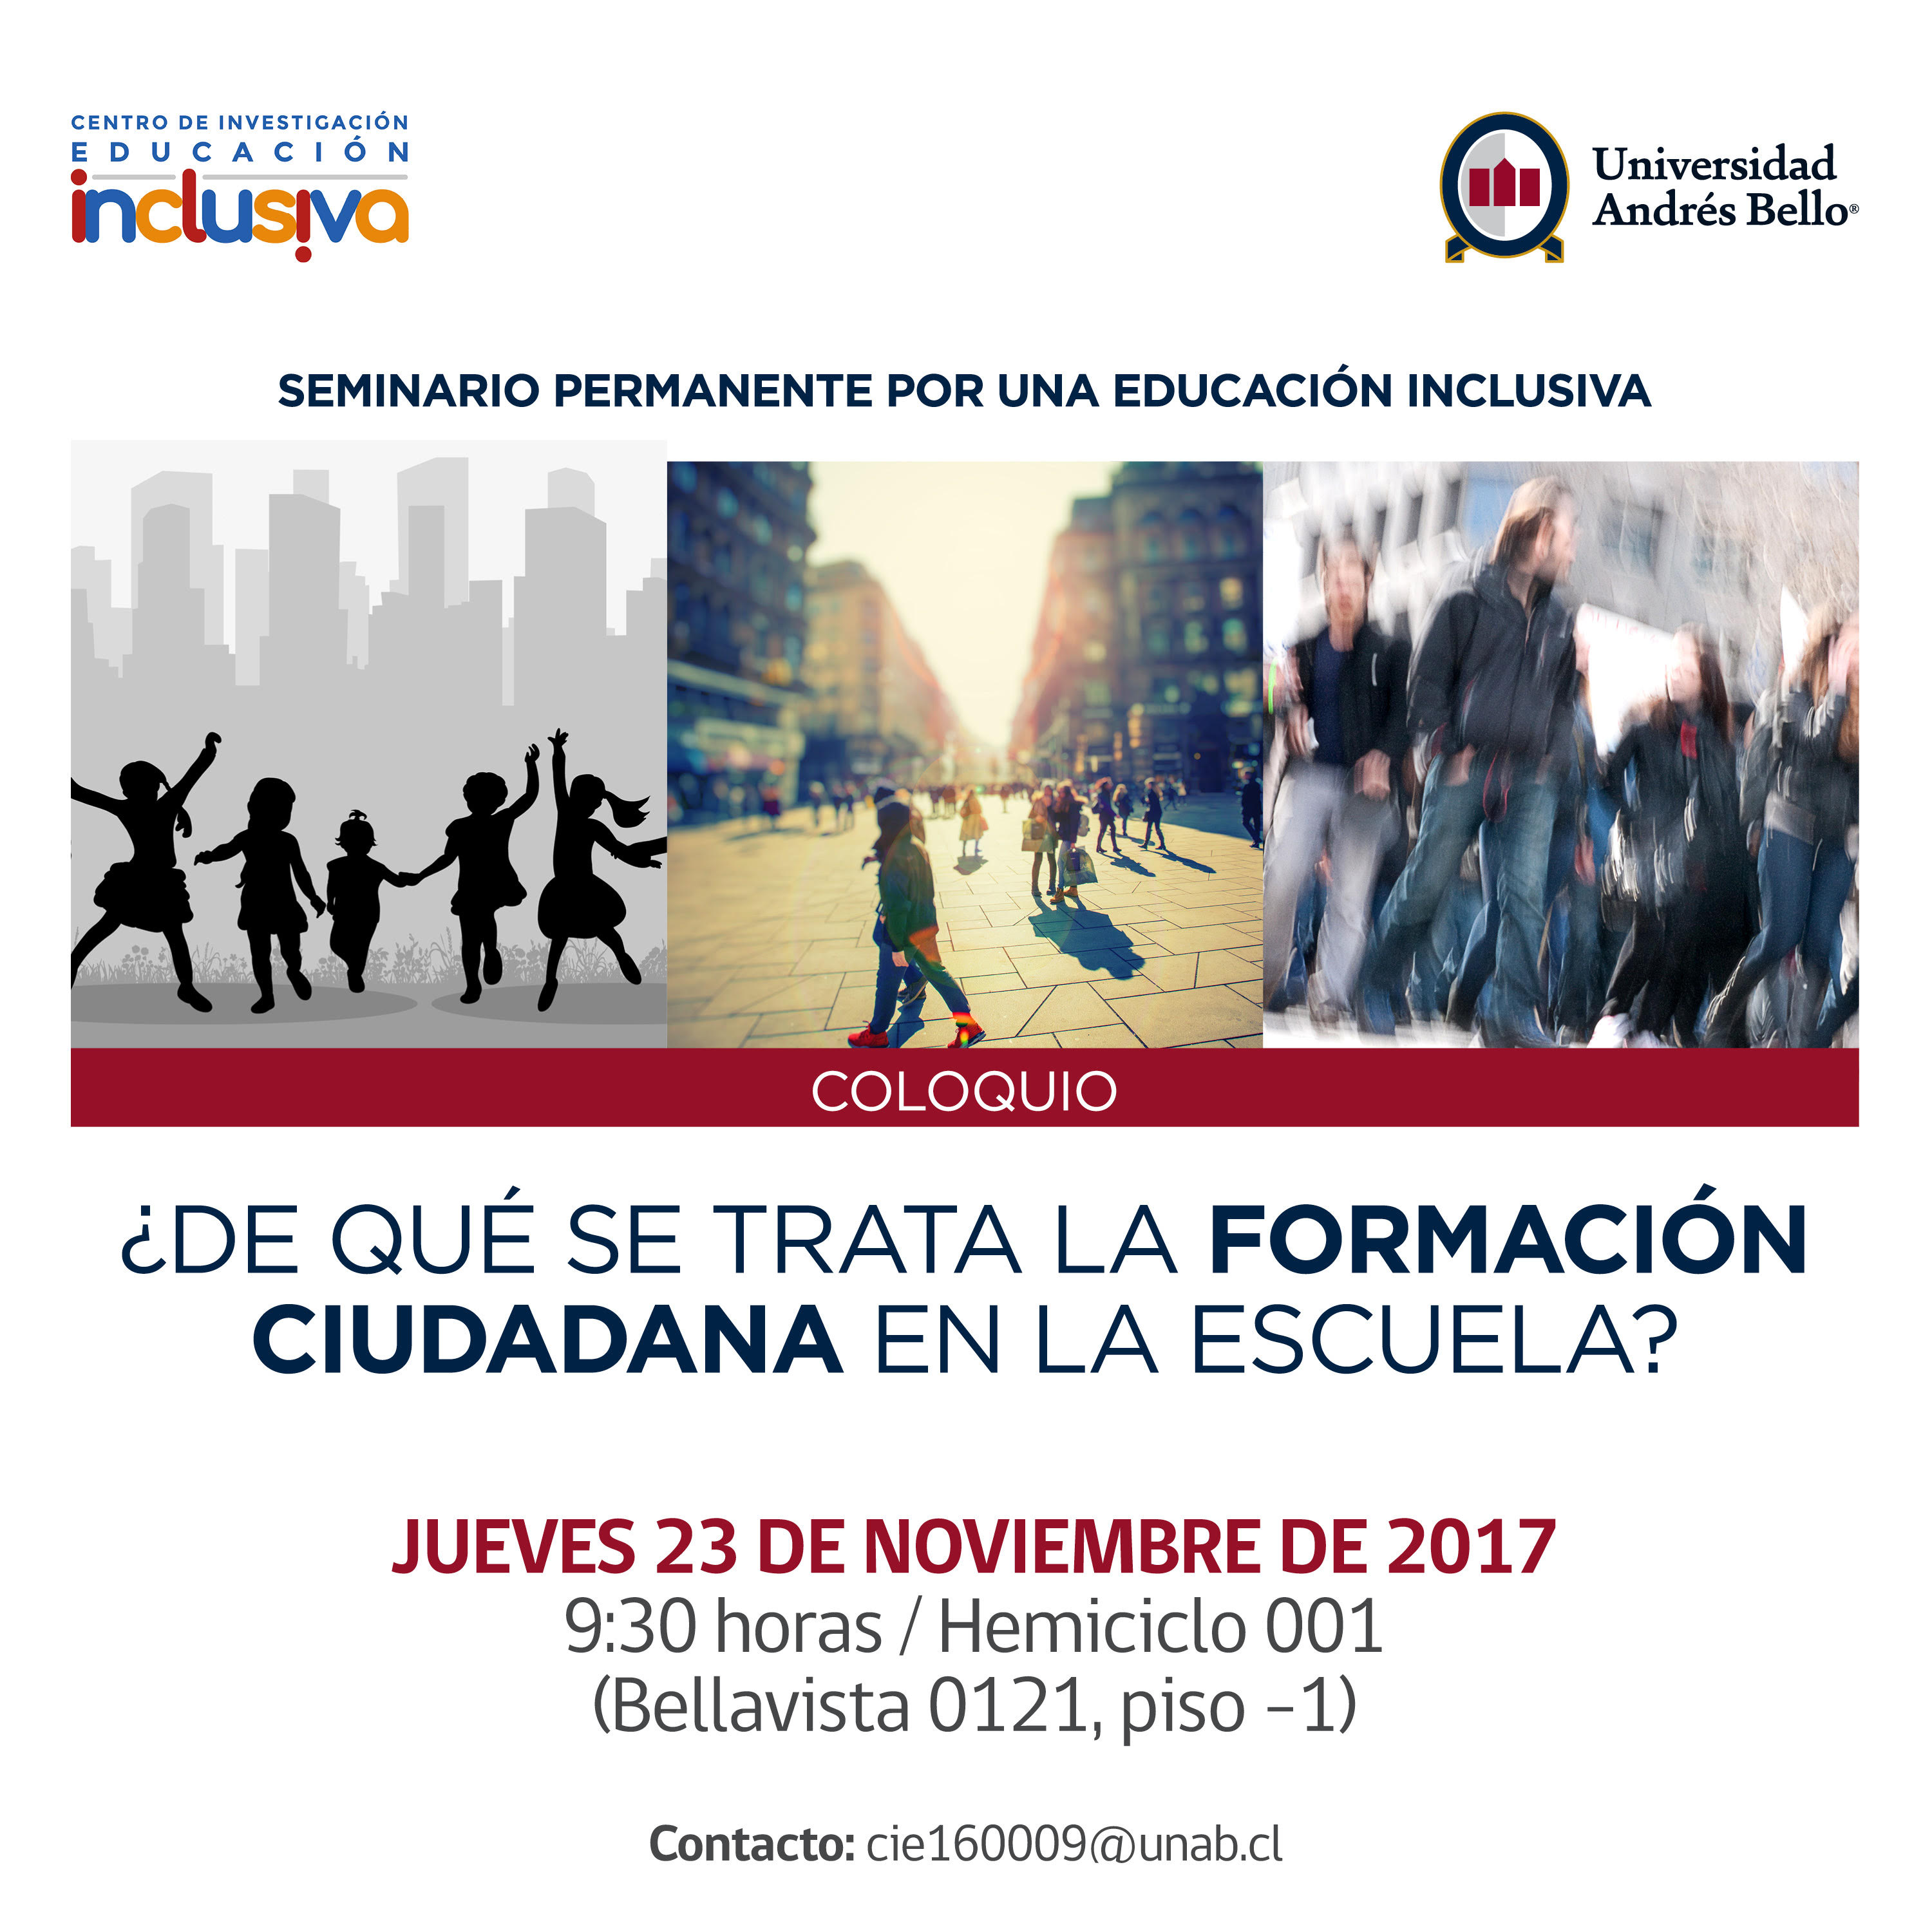 Centro Eduinclusiva y Universidad Andrés Bello realizarán coloquio sobre formación ciudadana en la Escuela